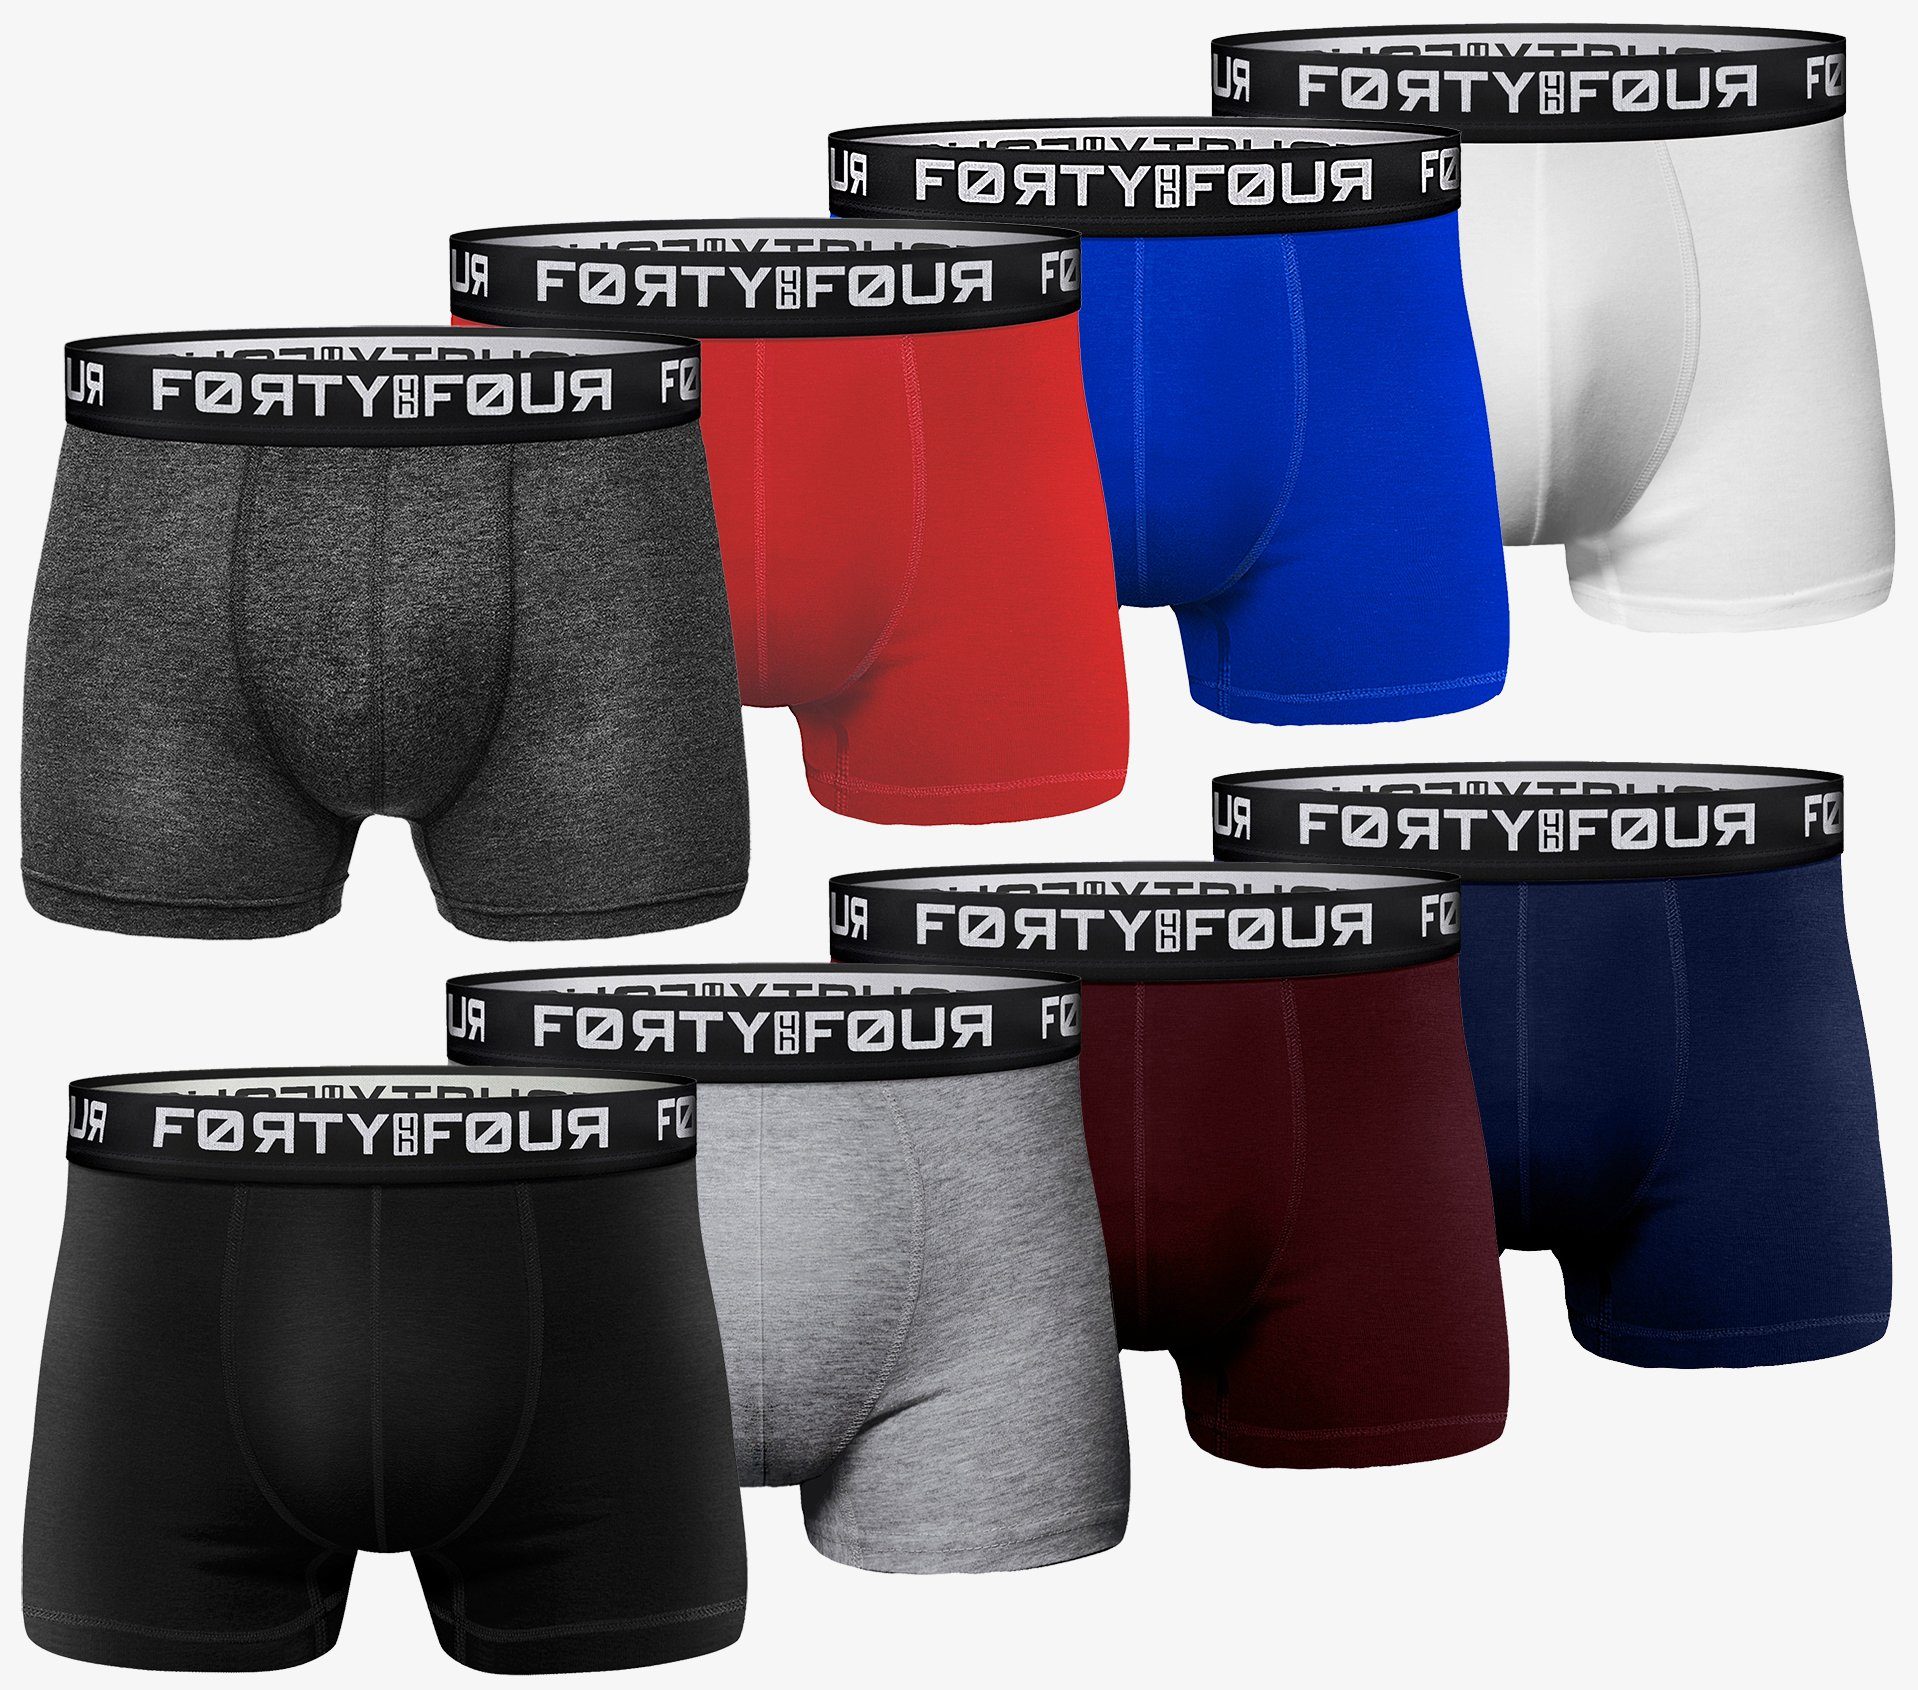 FortyFour Boxershorts Herren Männer Unterhosen Baumwolle Premium Qualität perfekte Passform (Vorteilspack, 8er Pack) S - 7XL 716d-mehrfarbig